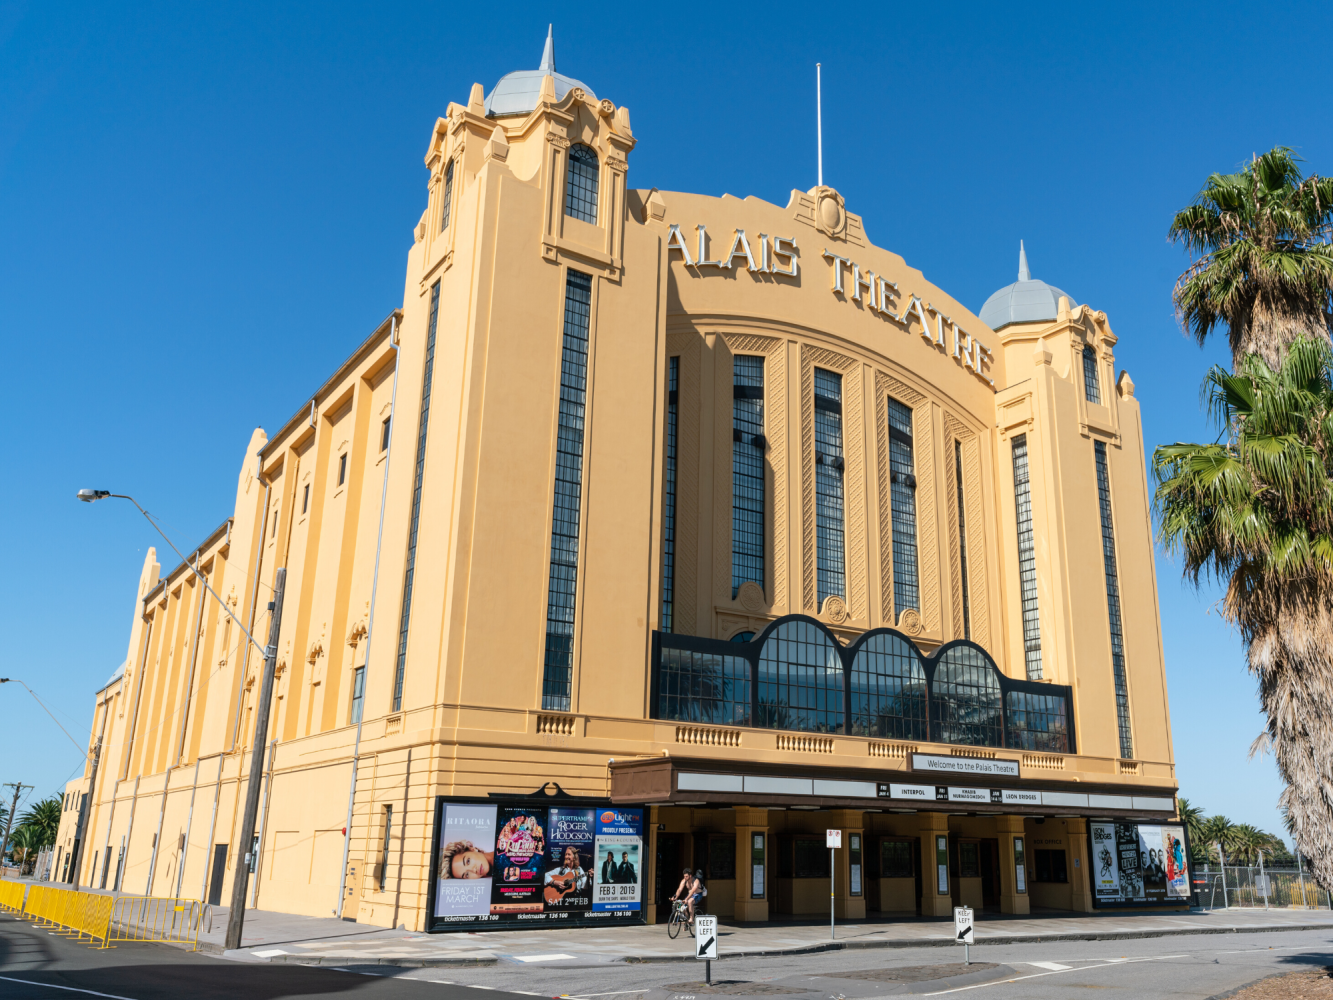 Palais Theatre Melbourne